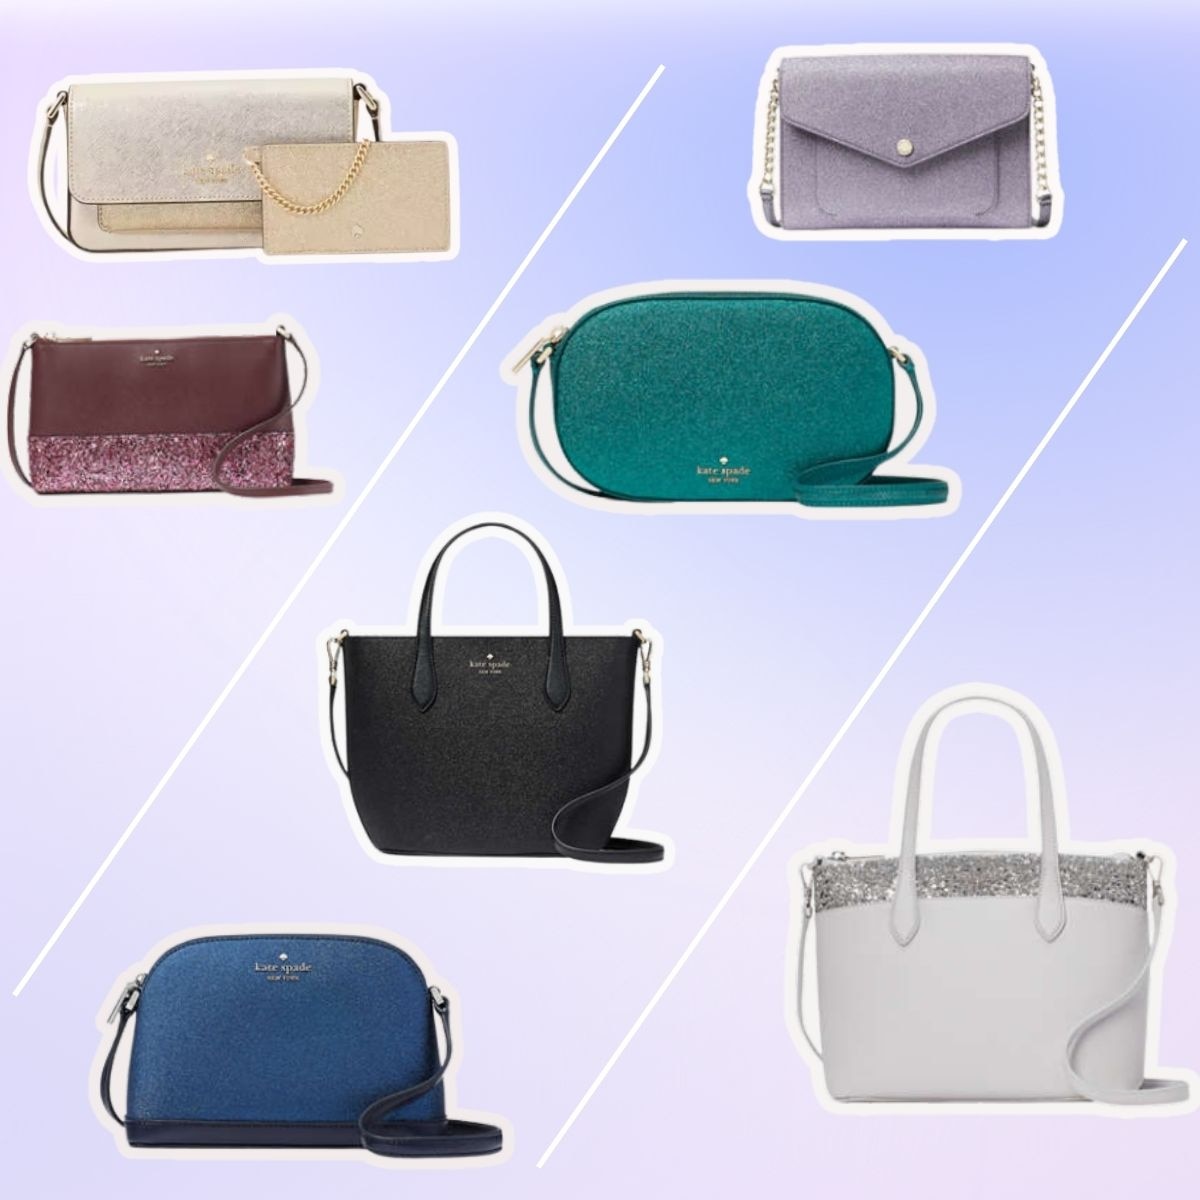 Kate Spade Black Patent Shiny Clutch Wristlet bag bag purse wallet | eBay